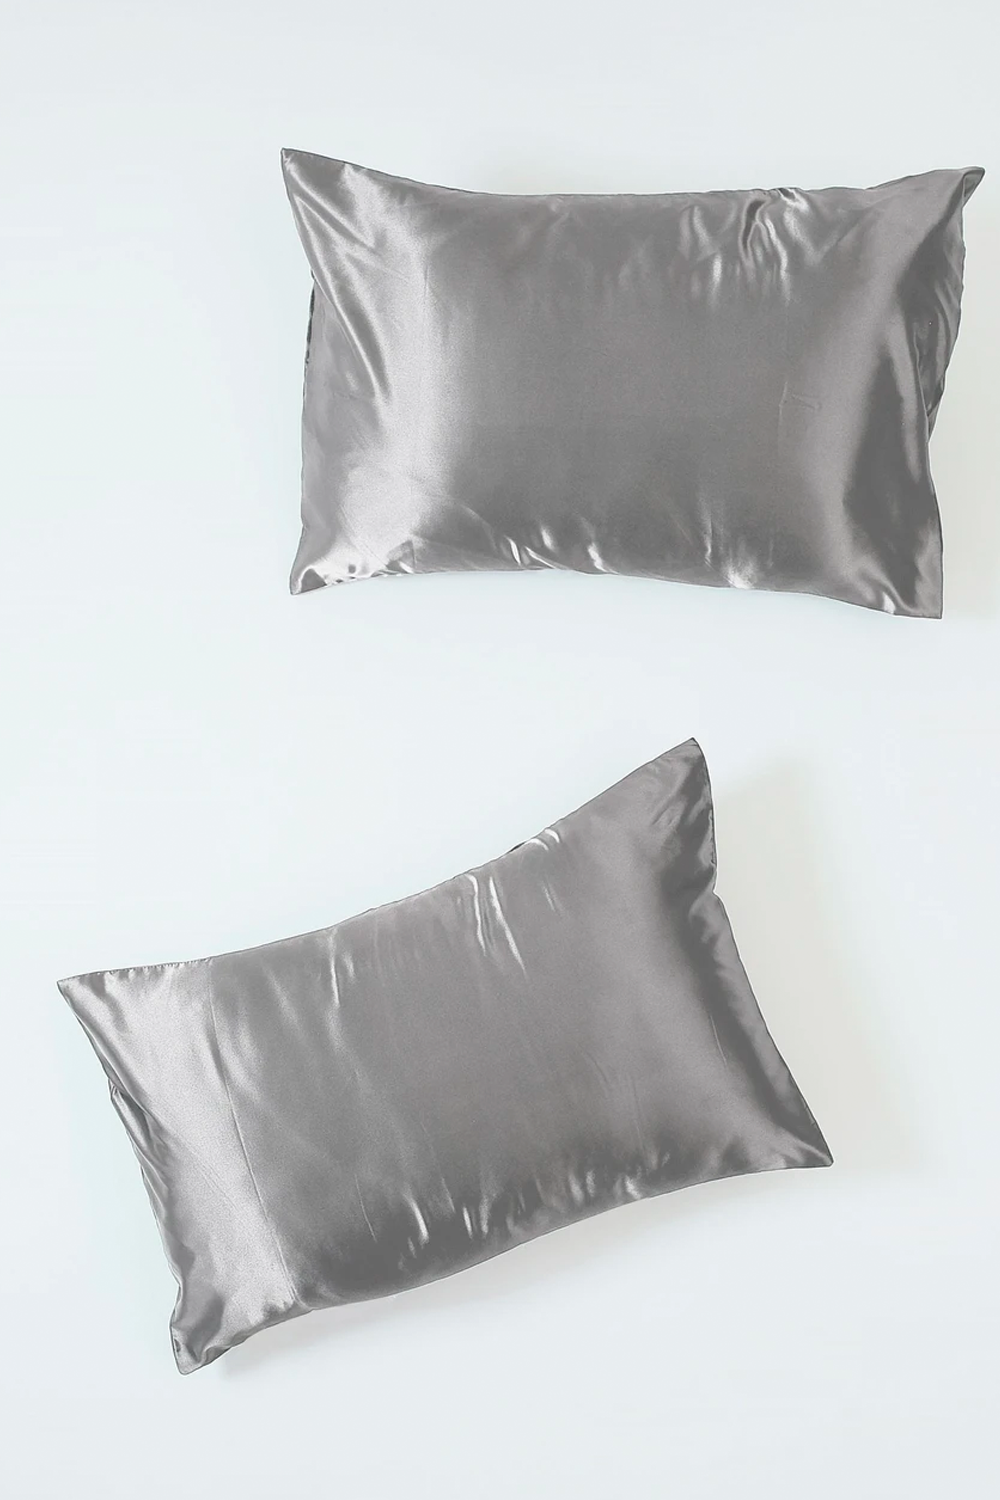 silk pillowcase for african american hair